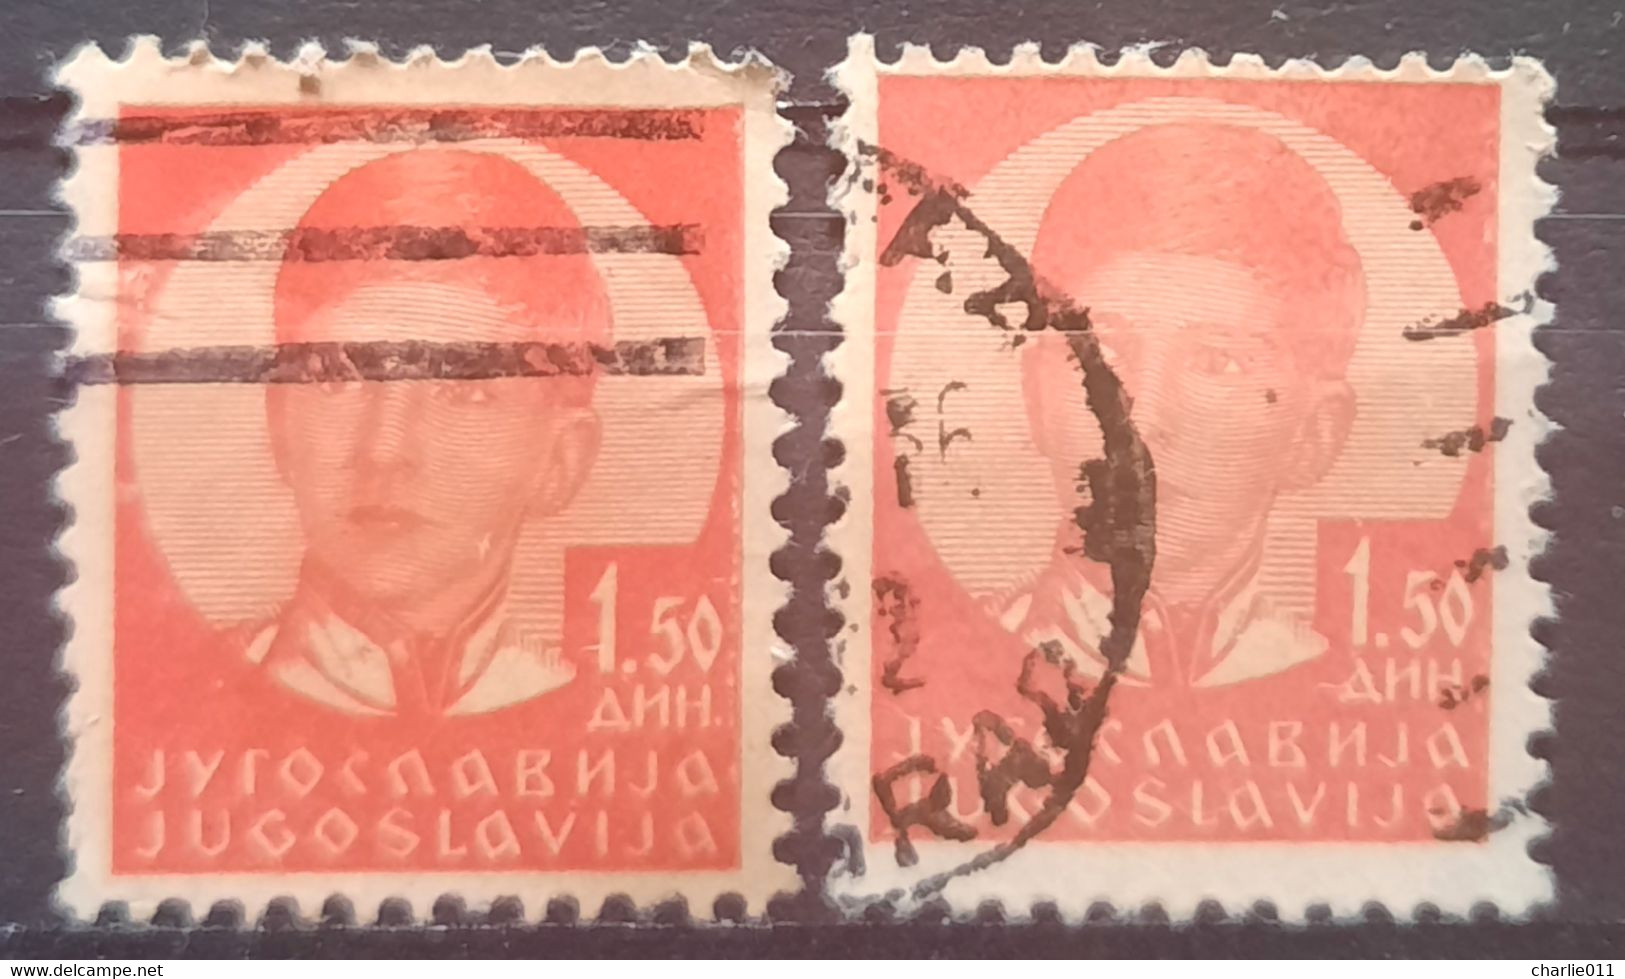 KING PETER II-1.50 -ERROR-VARIATION-YUGOSLAVIA-1935 - Non Dentelés, épreuves & Variétés